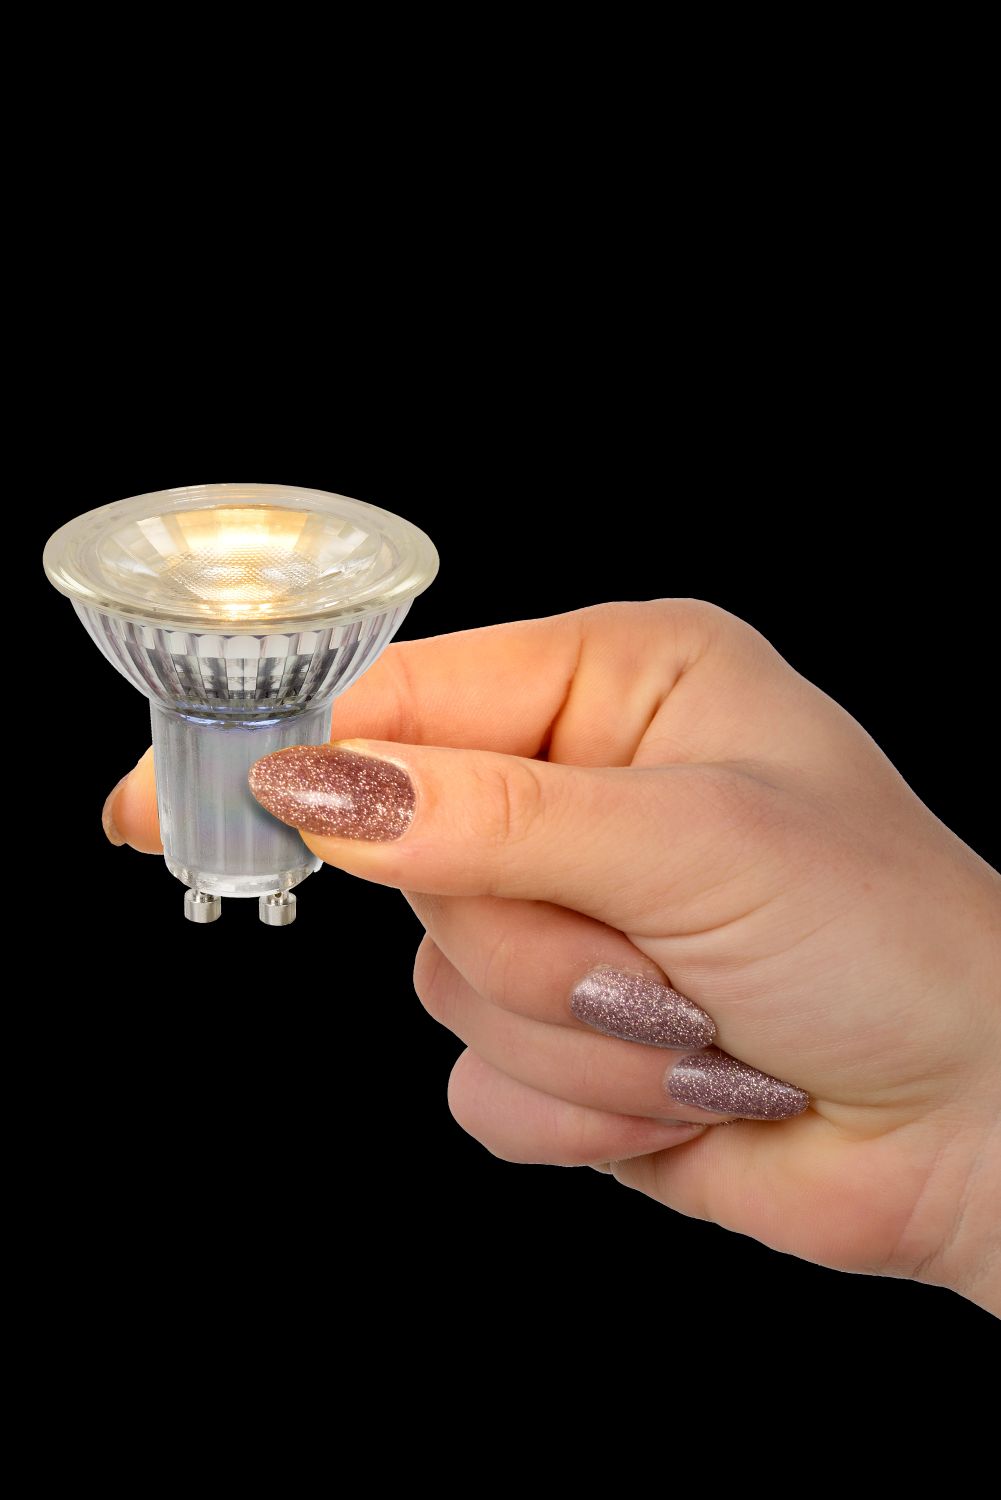 Lucide MR16 - Led lamp - Ø 5 cm - LED Dimb. - GU10 - 1x5W 2700K - Transparant